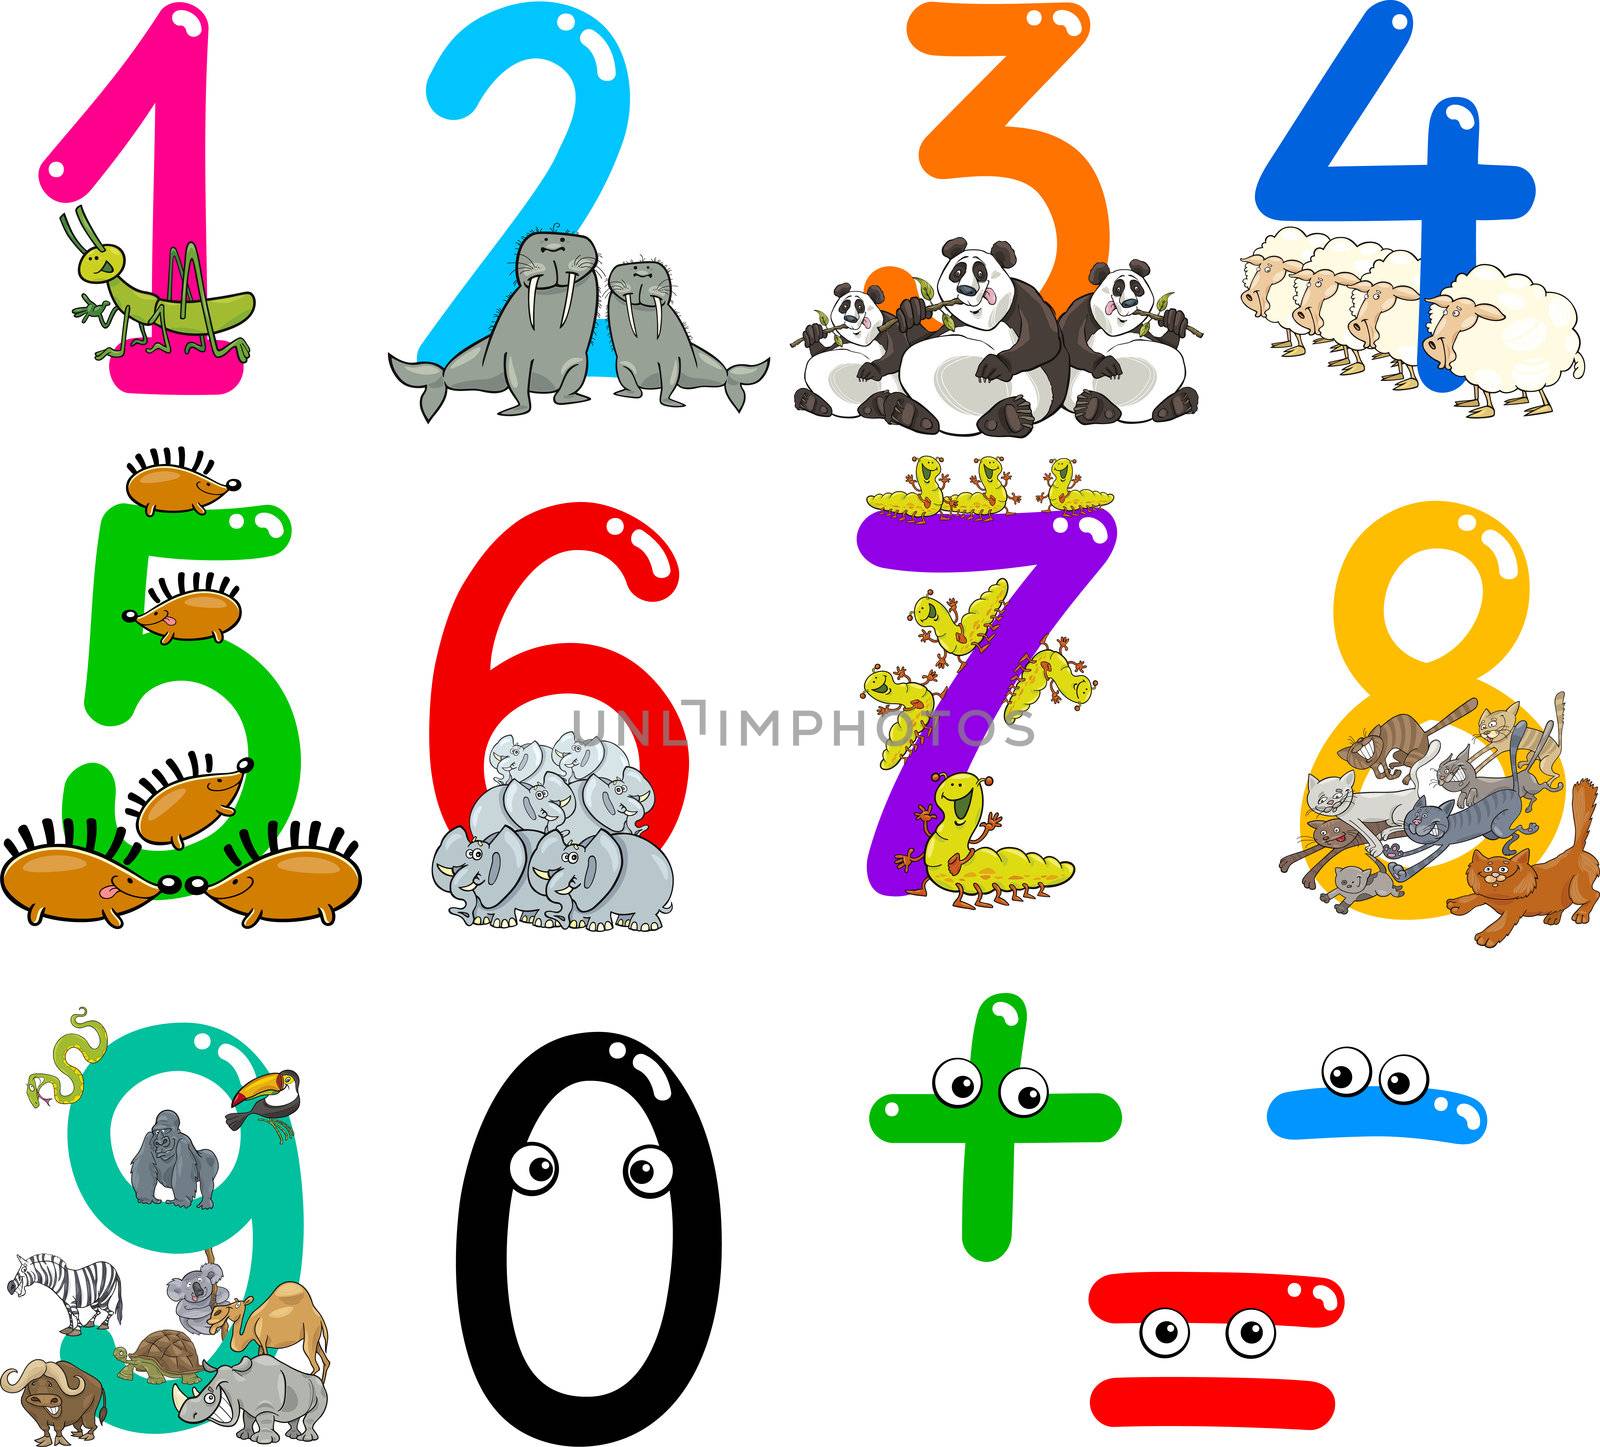 numbers with cartoon animals by izakowski